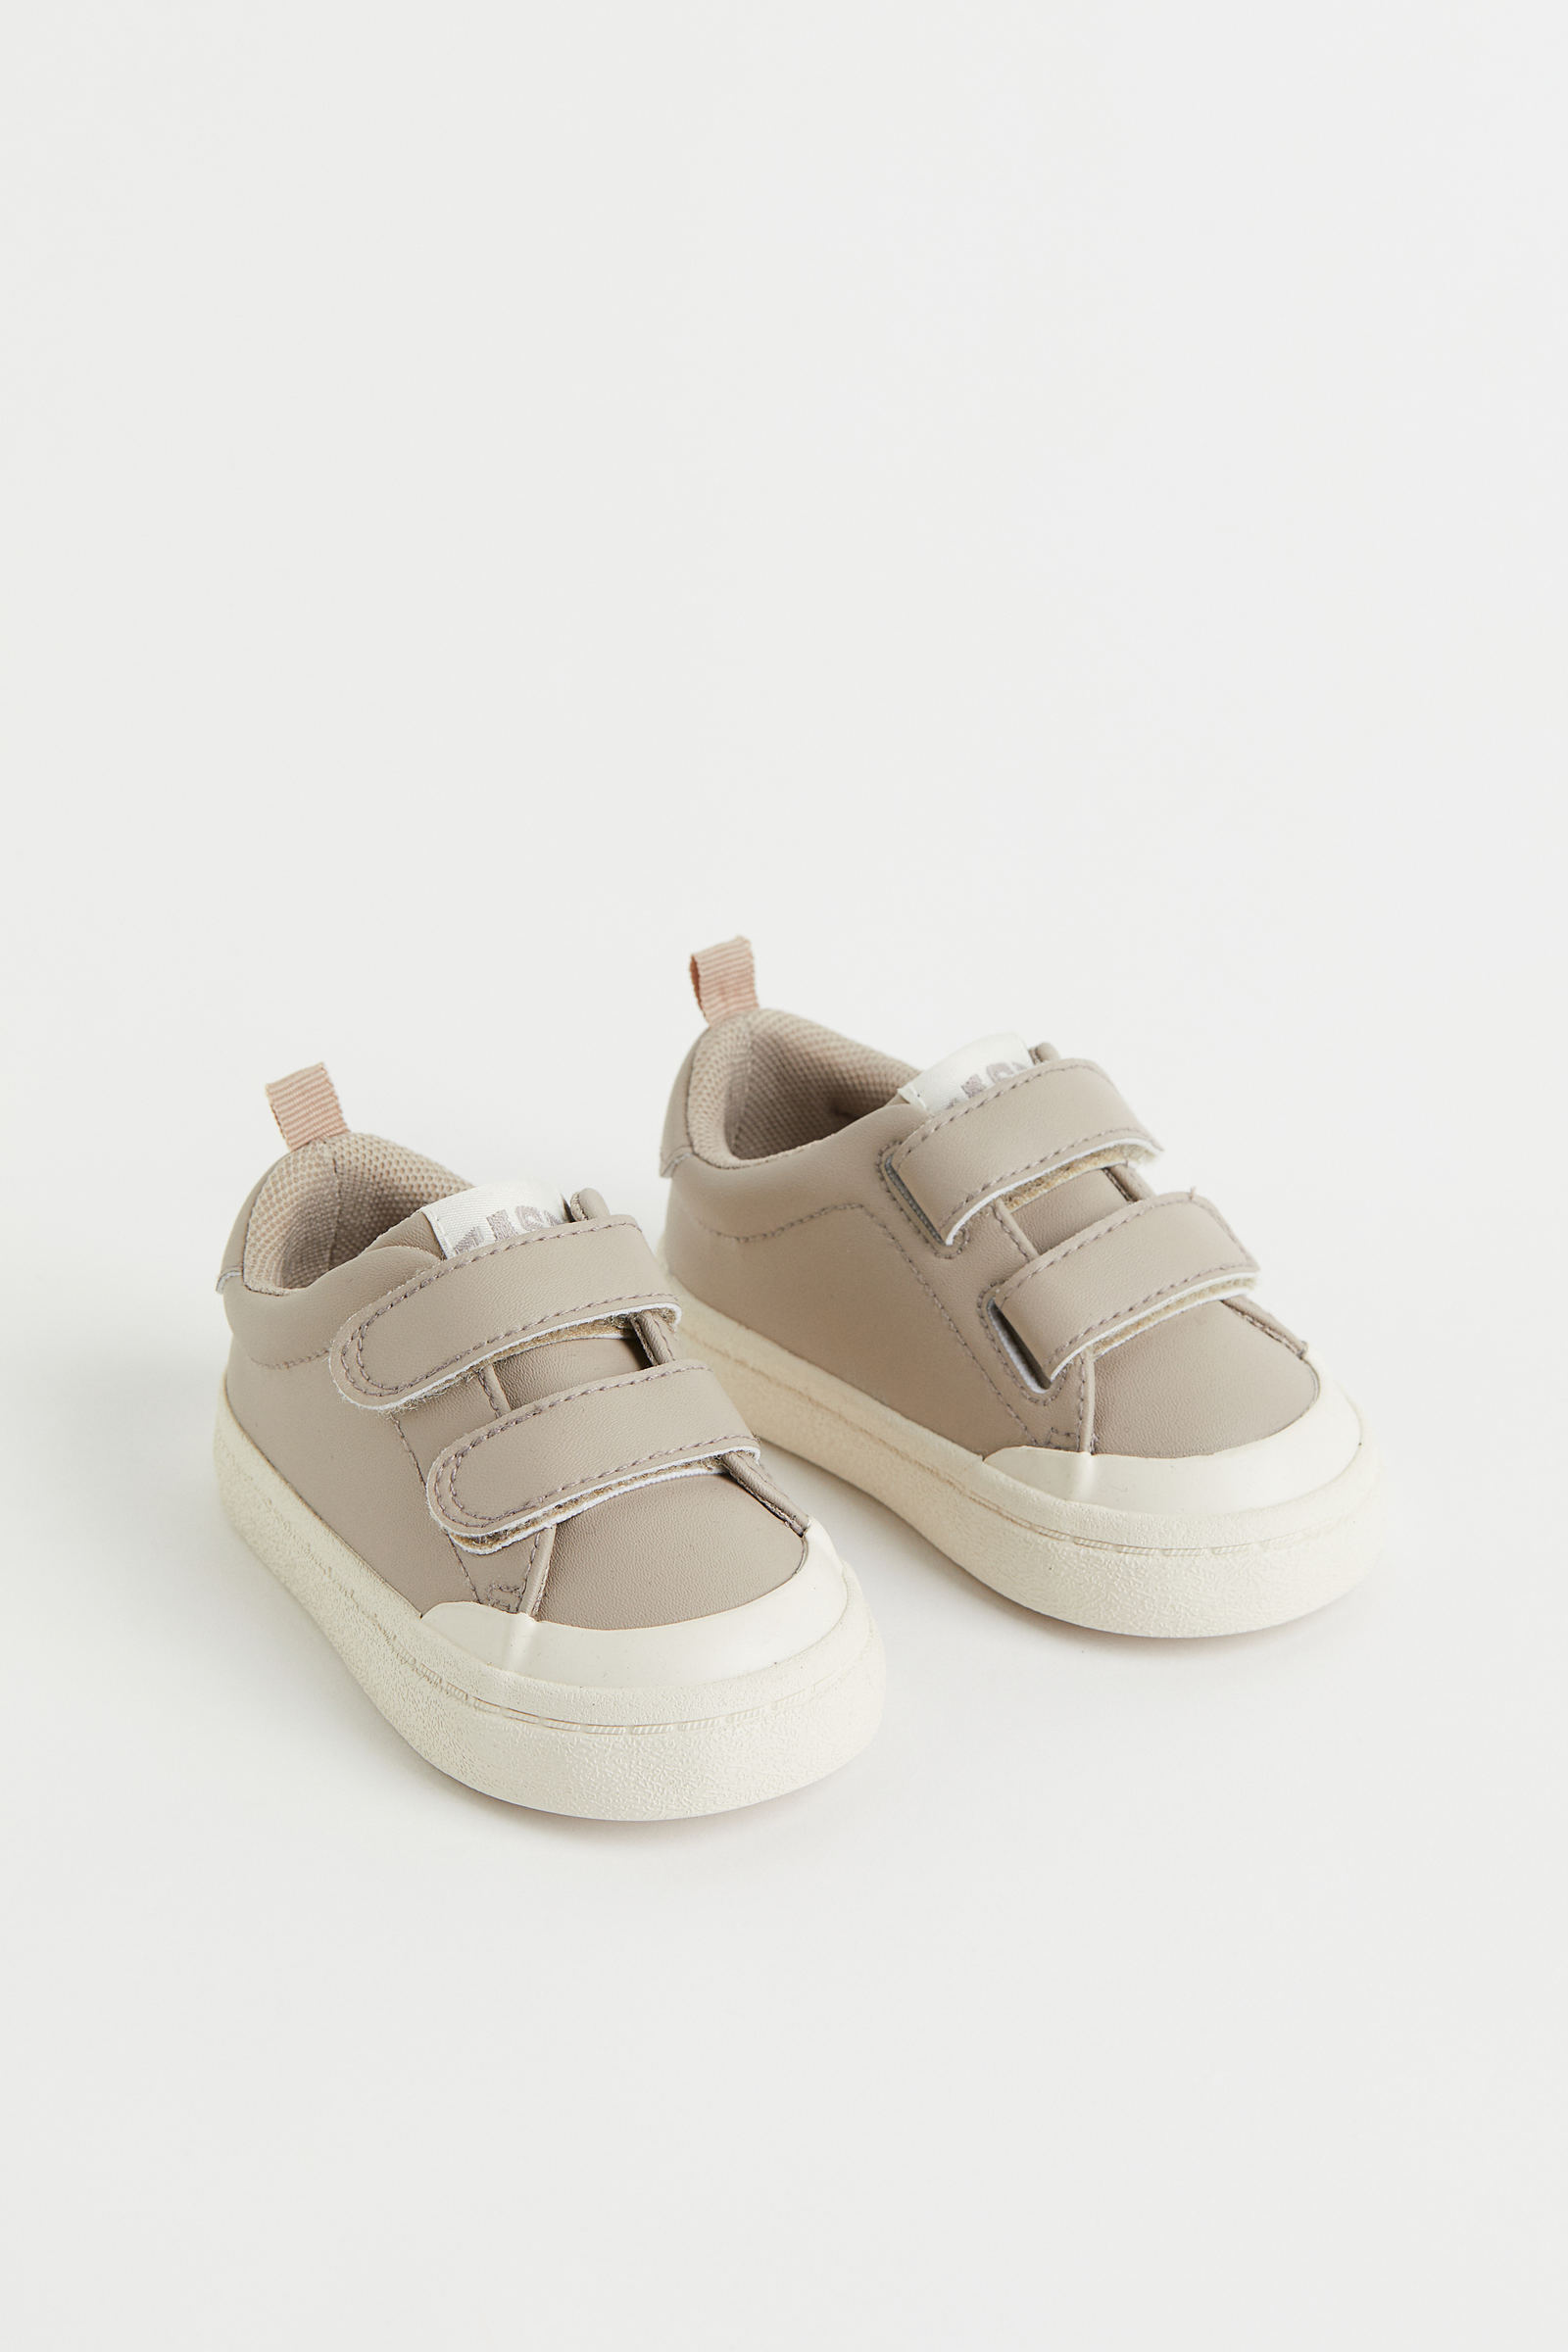 Zapatos | Bebés - CL